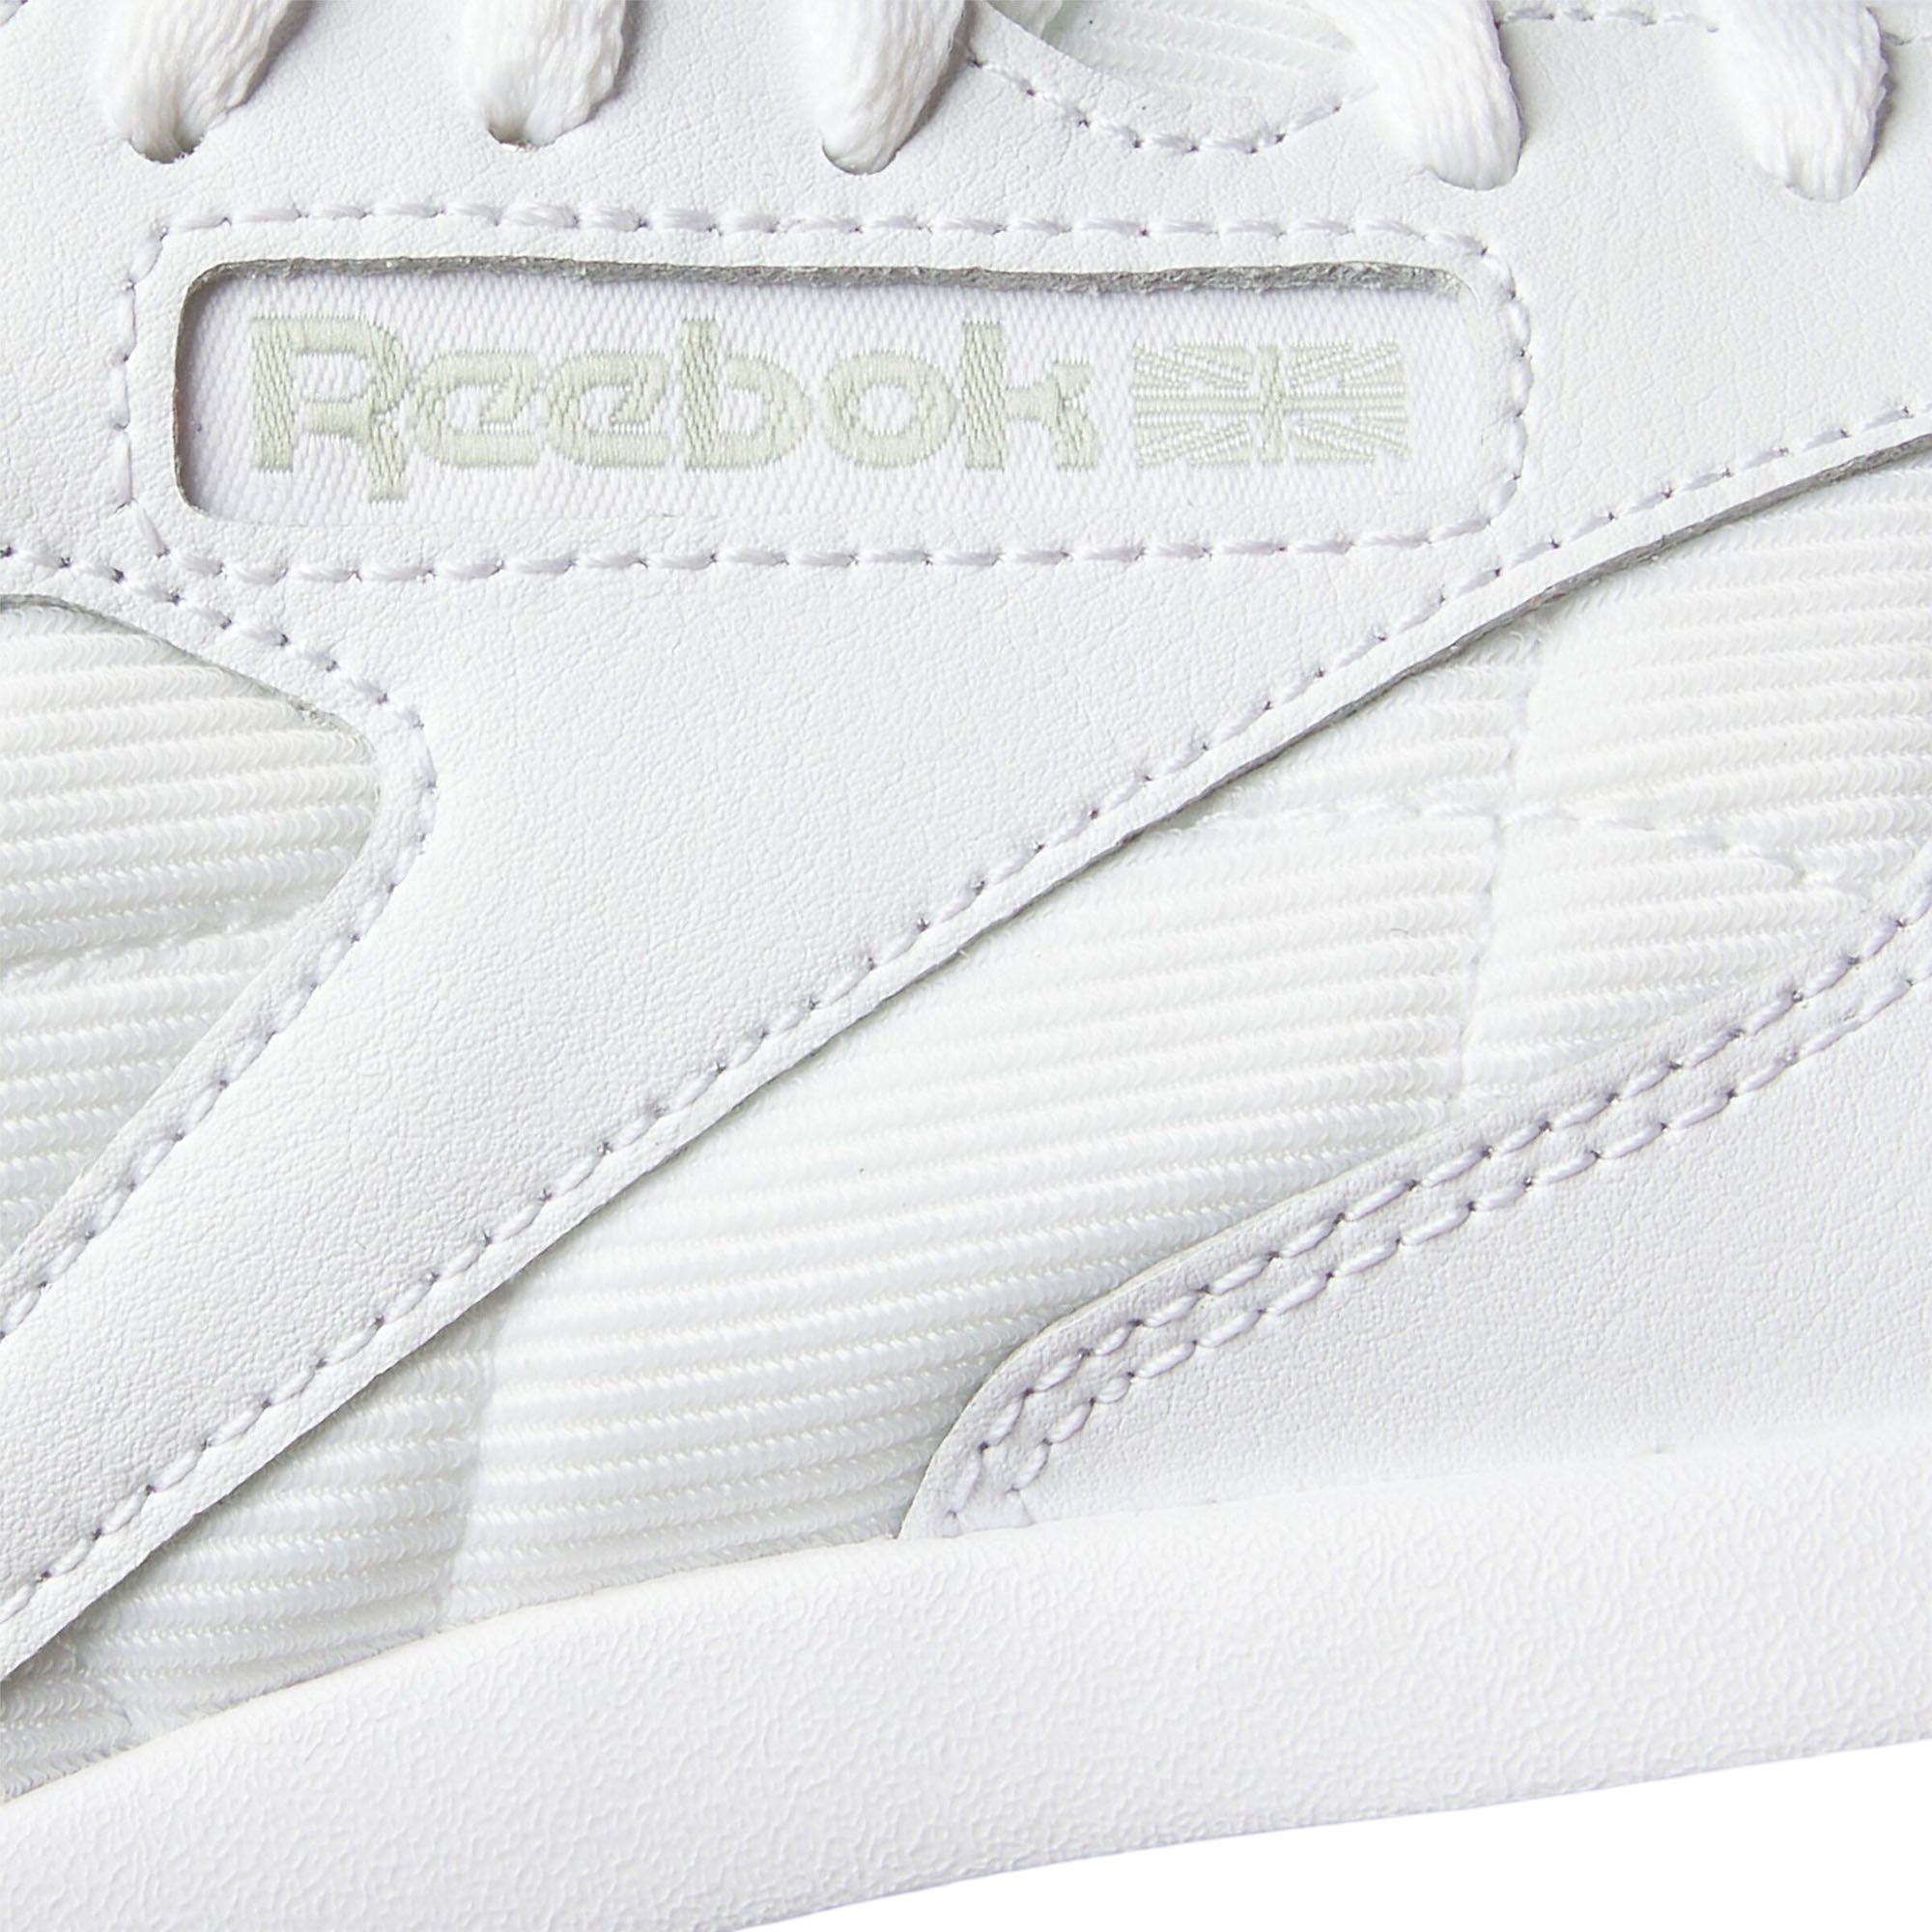 Reebok Footwear Women Classic Leather Sp Shoes Armgrn/Armgrn